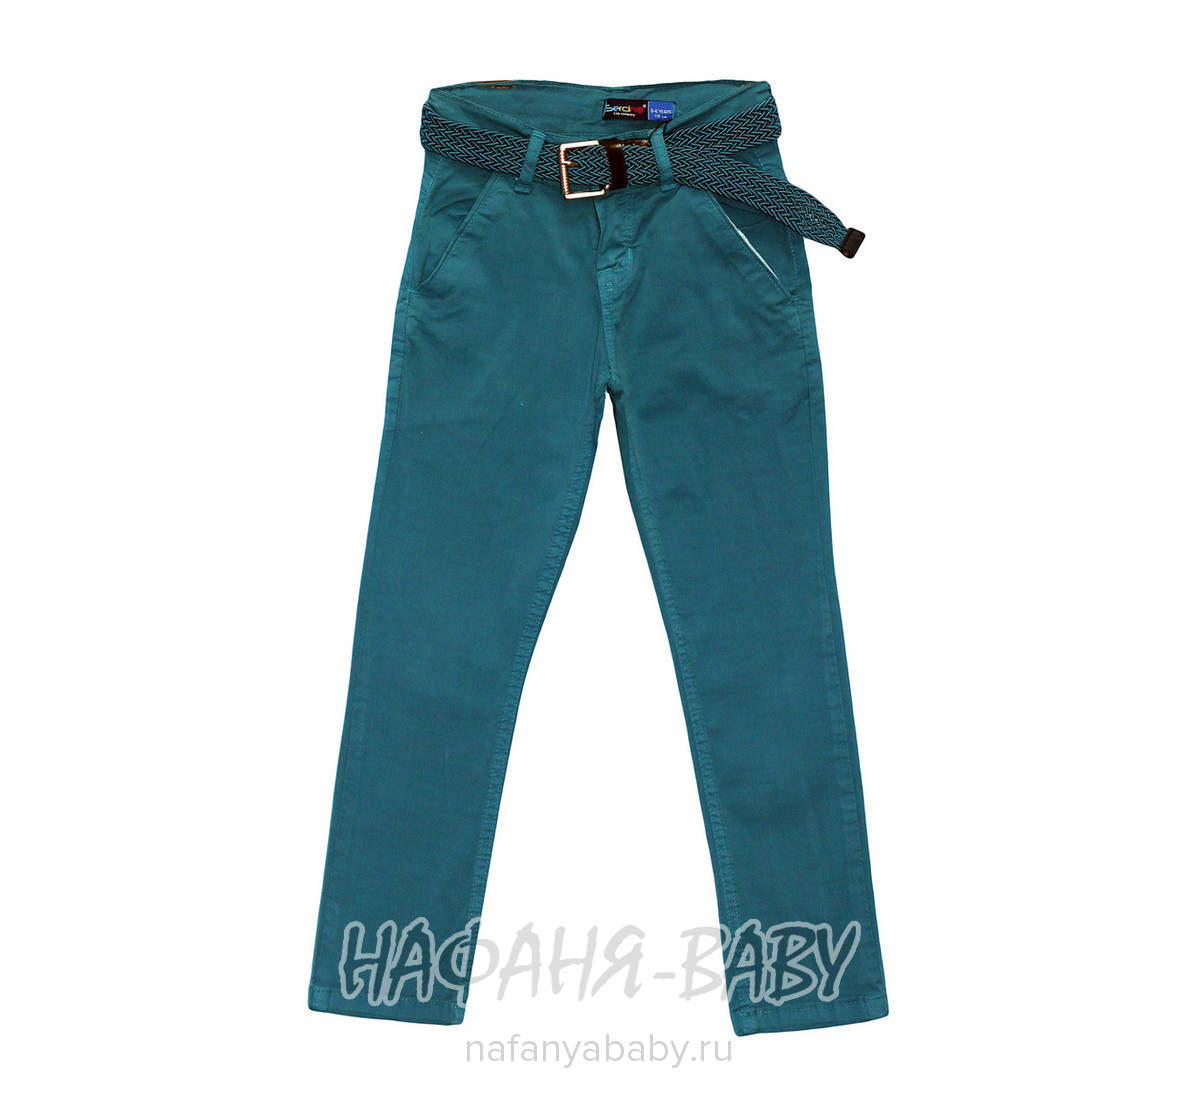 Подростковые летние брюки Sercino, купить в интернет магазине Нафаня. арт: 15233.